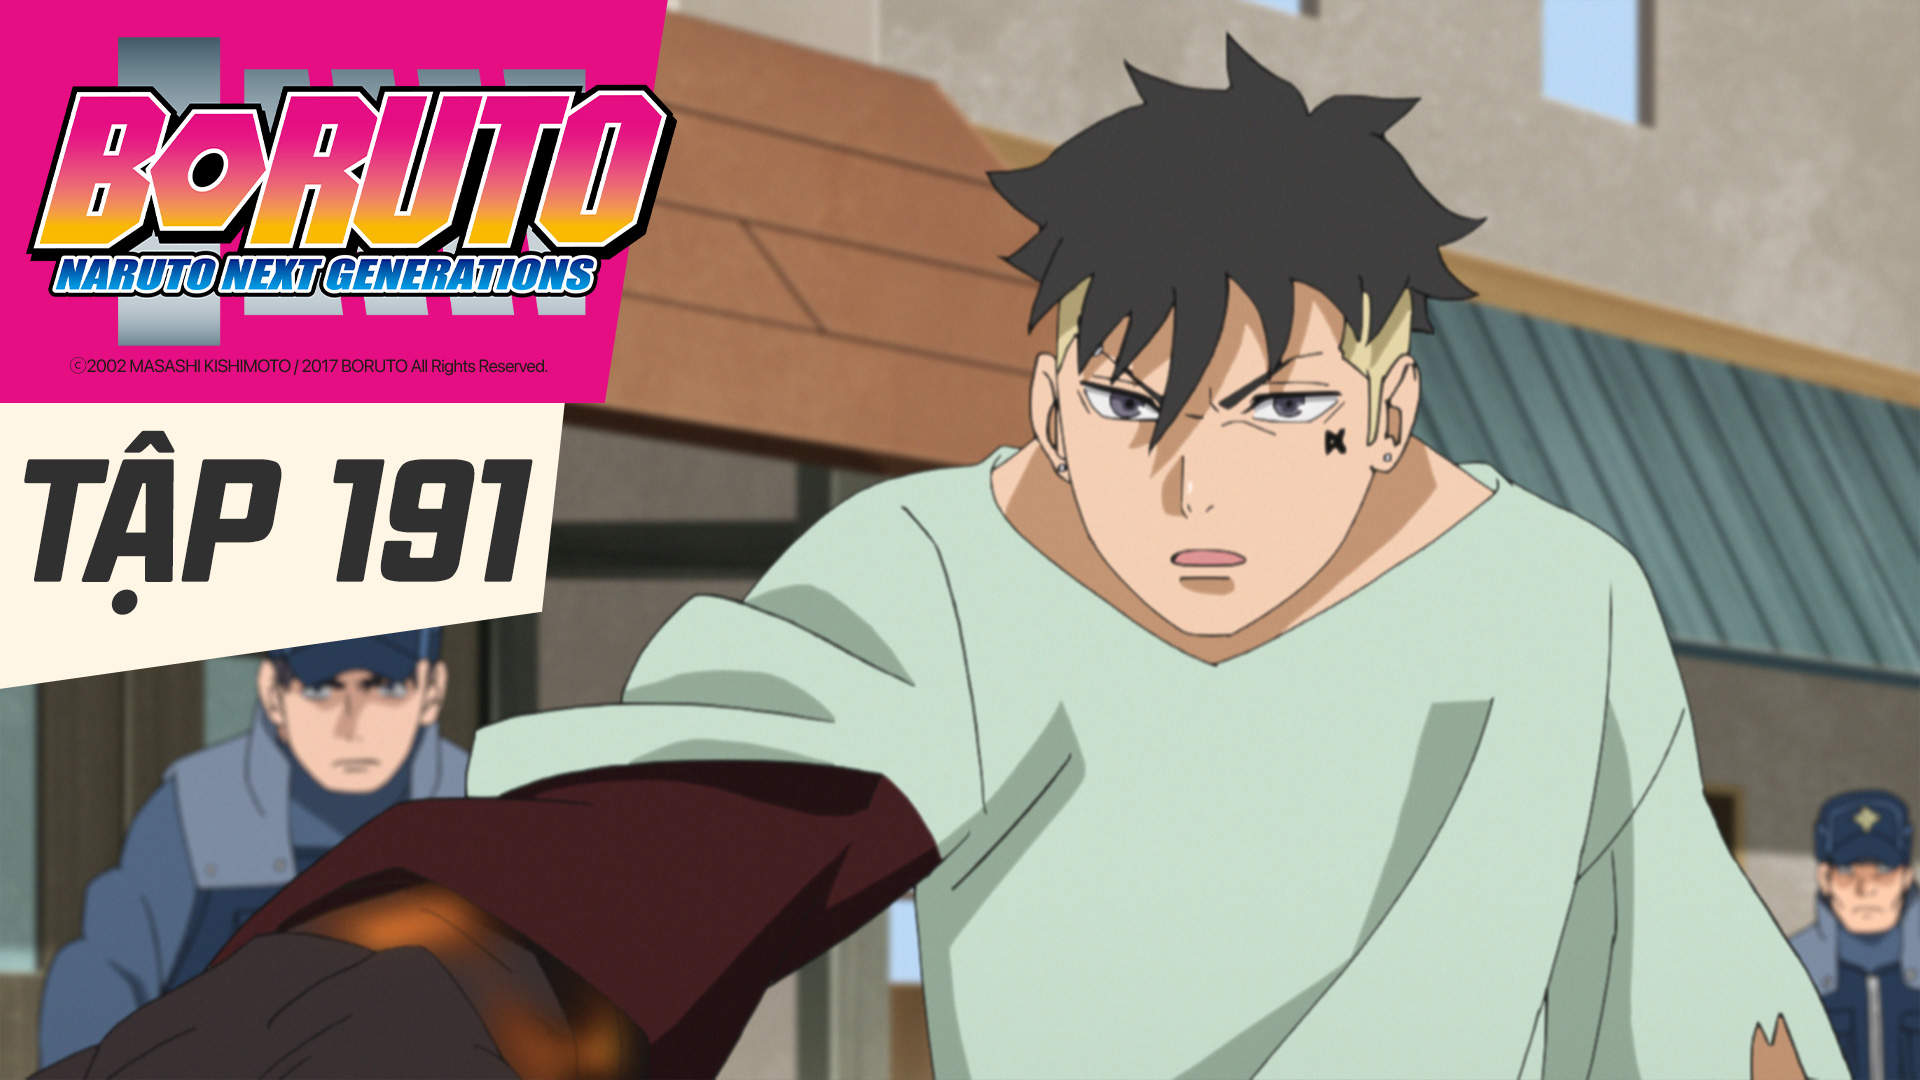 Boruto: Naruto Next Generations Episode 292 - Anime Review